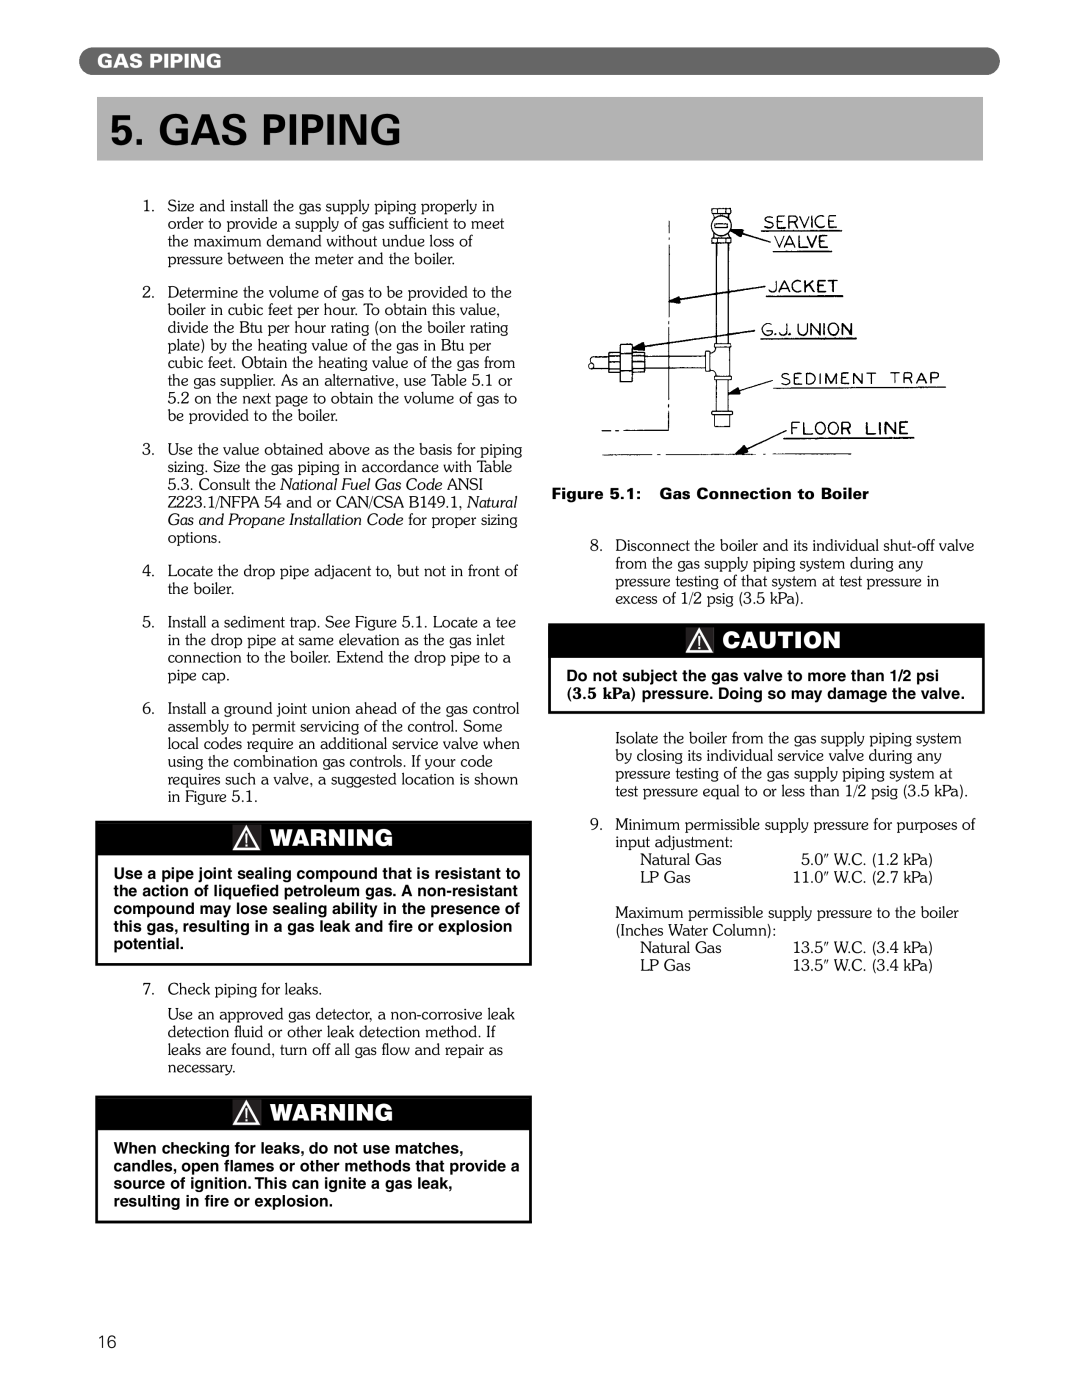 PB Heat DE manual Gas Piping 